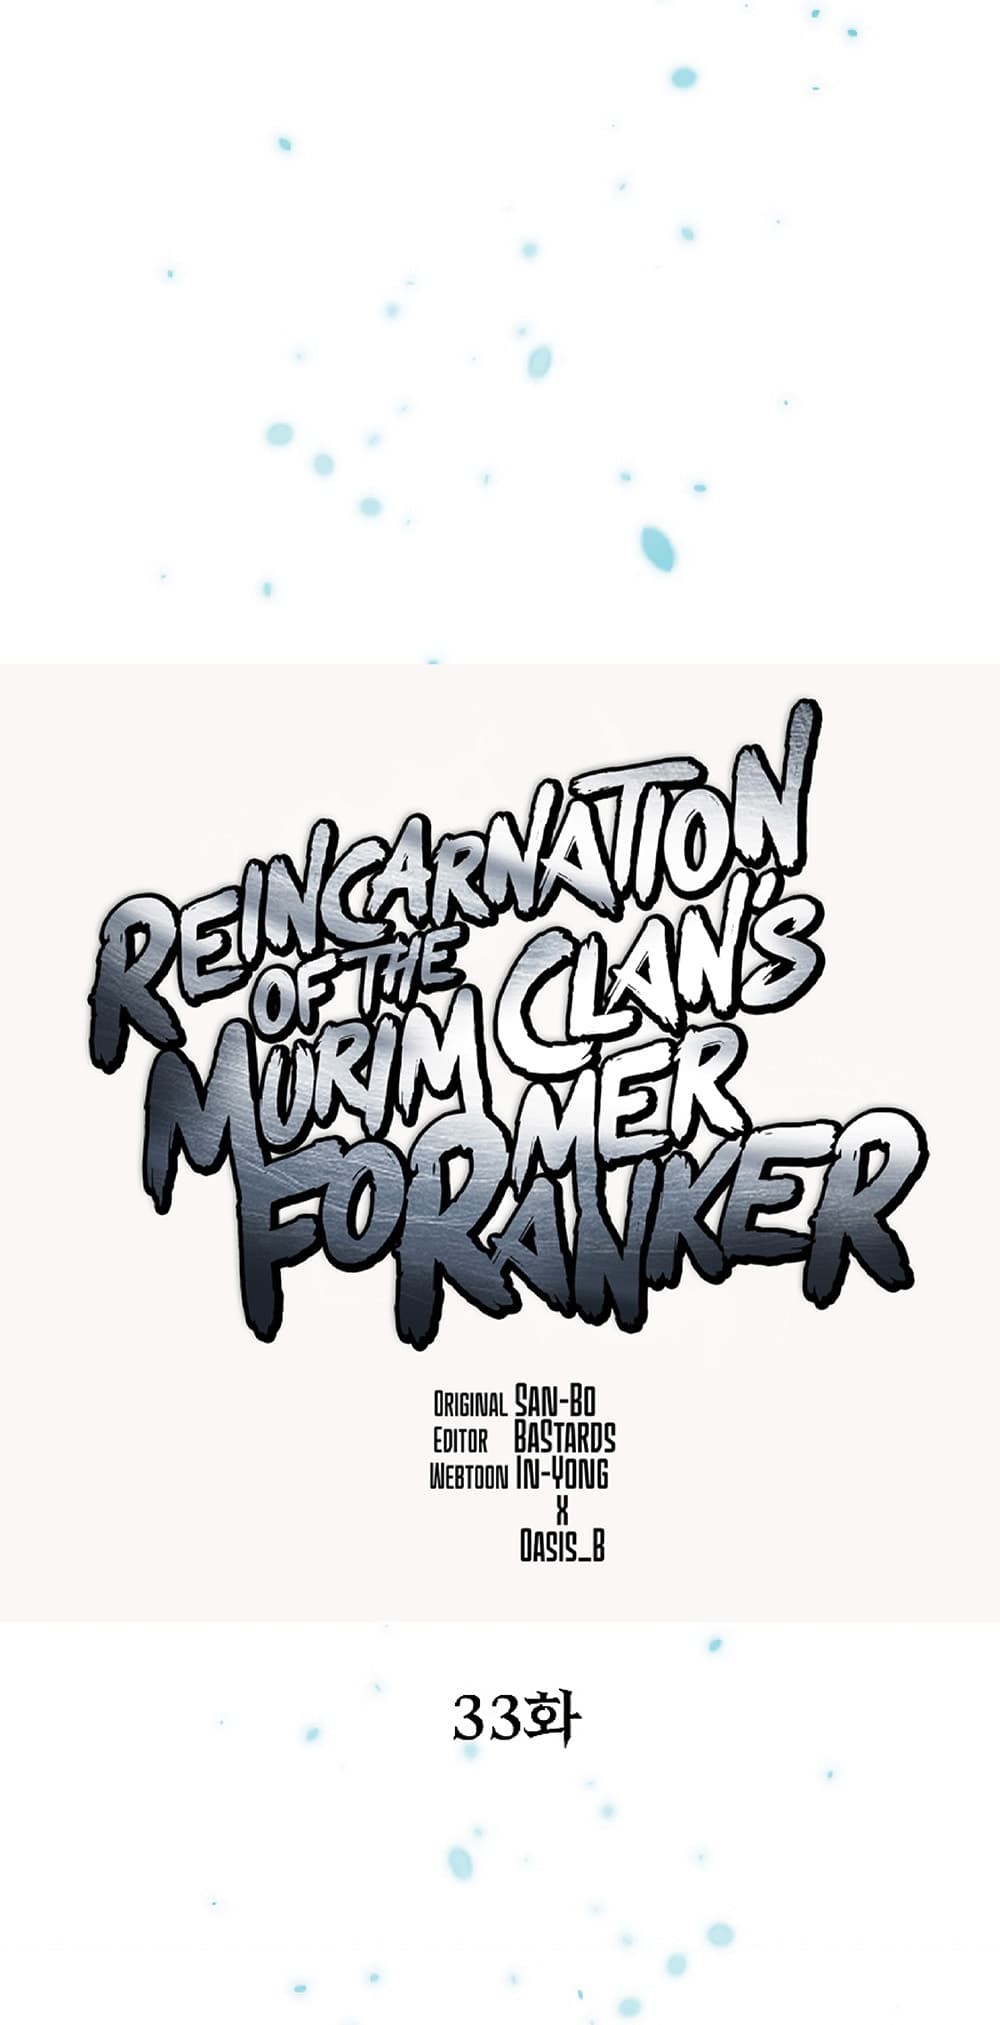 Reincarnation-of-the-Murim-Clans-Former-Ranker--33-27.jpg